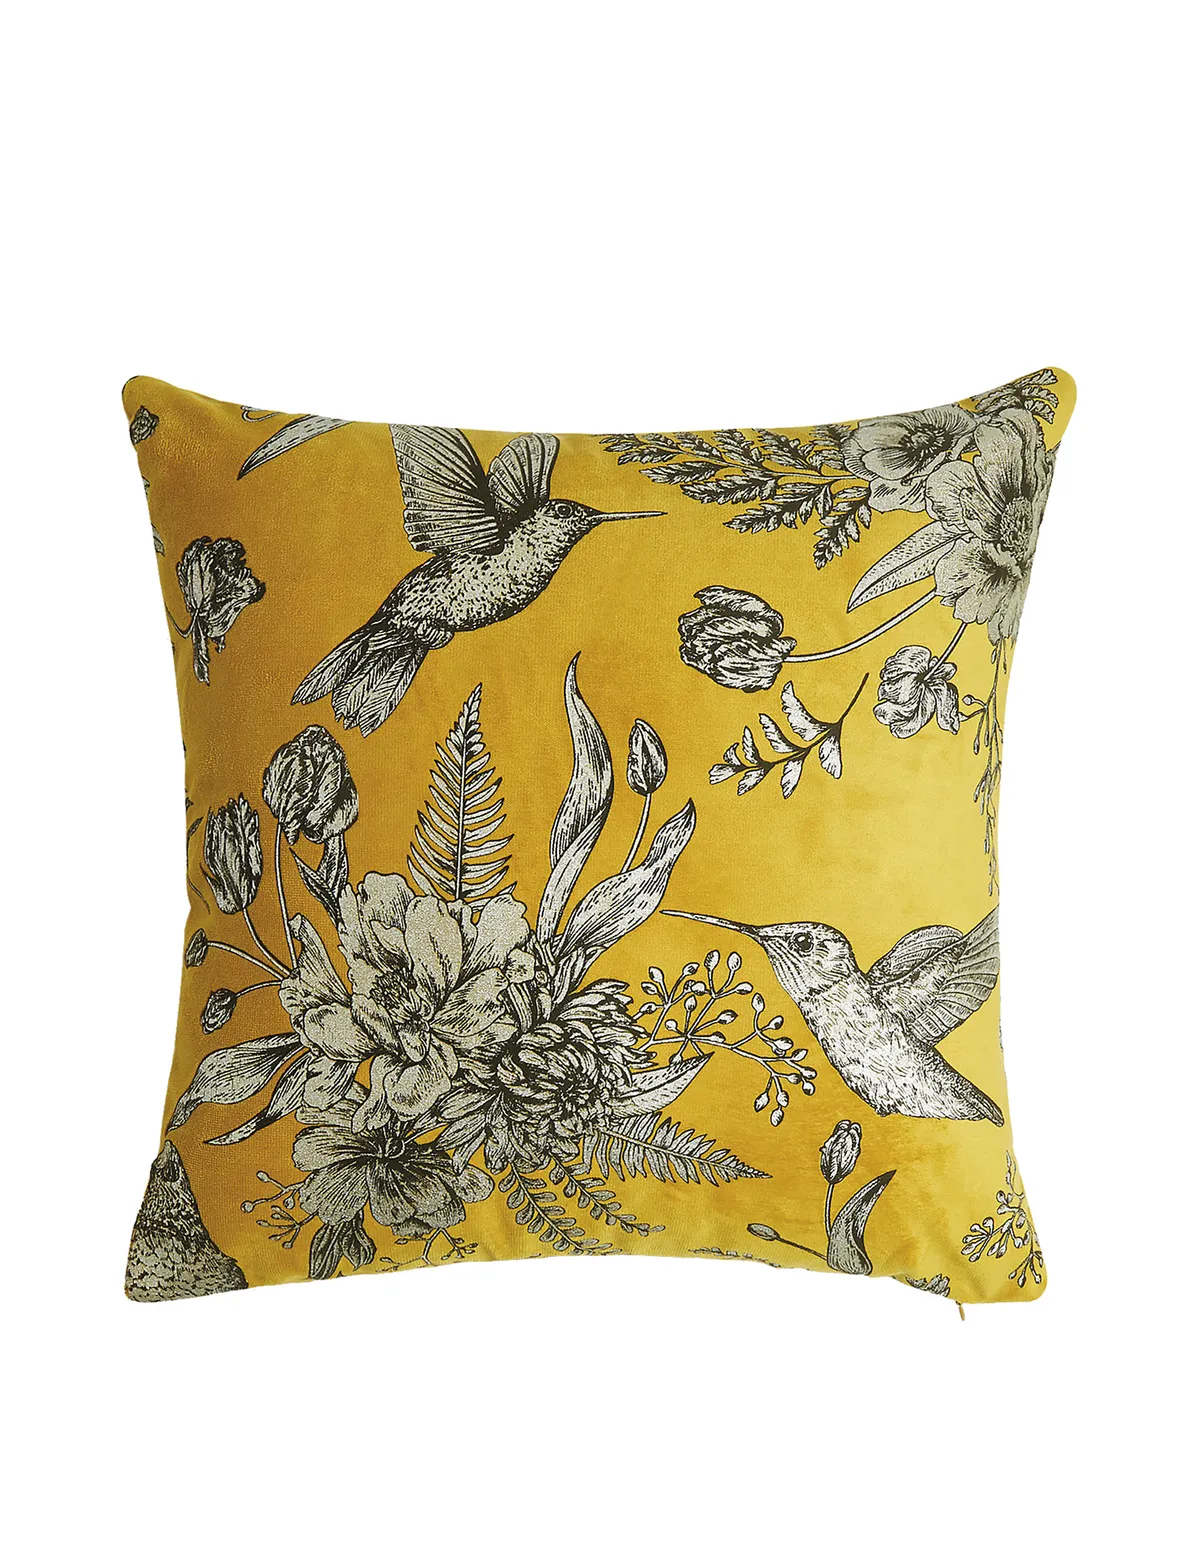 Foil floral cushion, £15, M&S